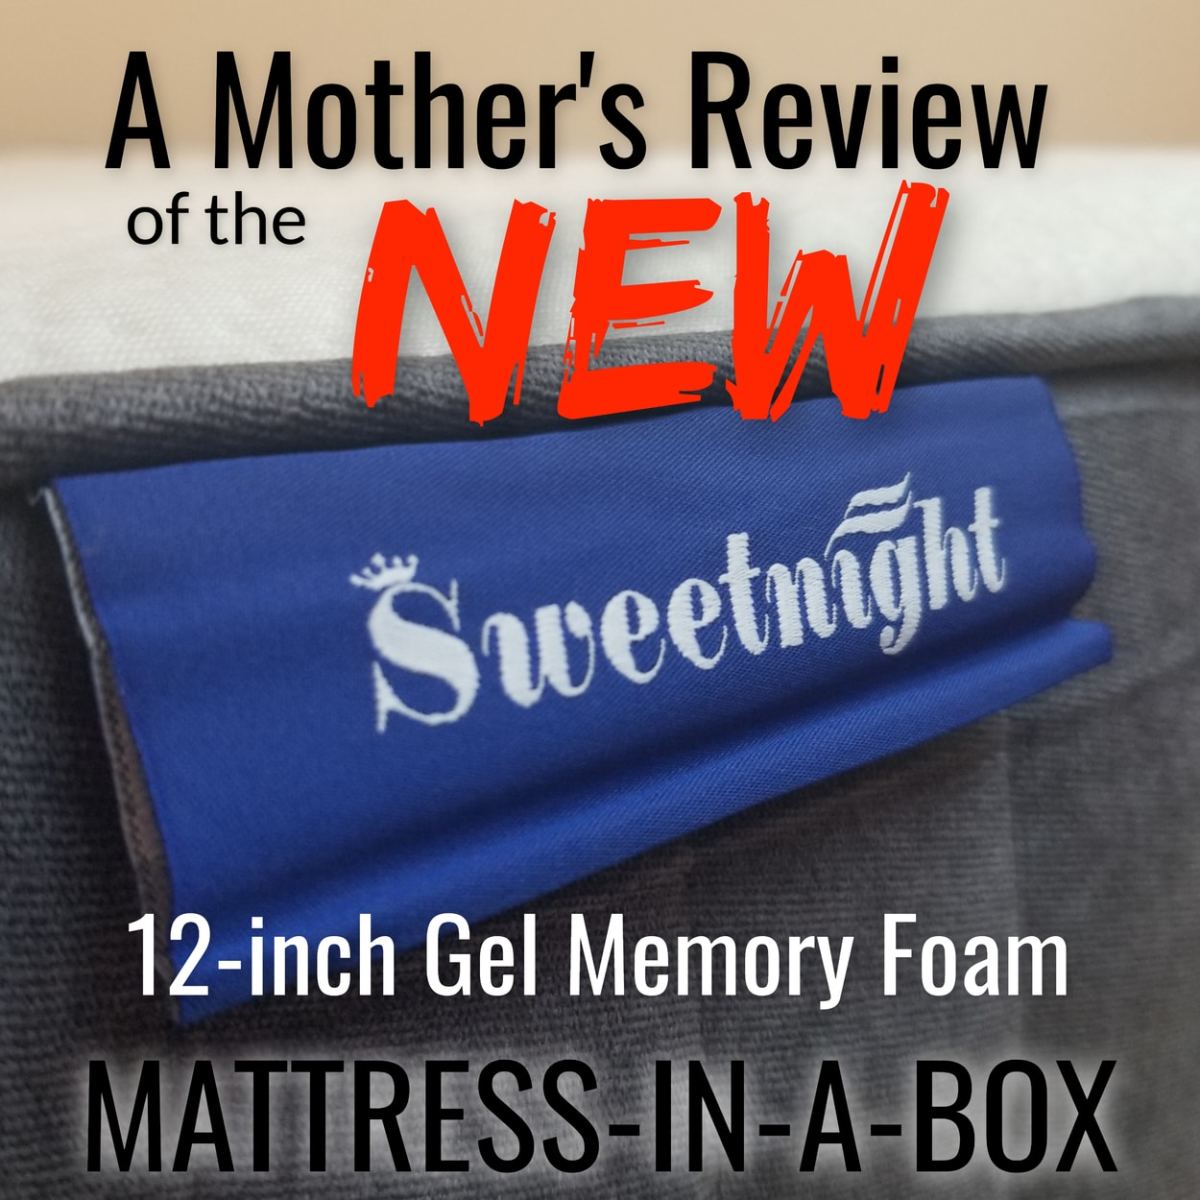 Review: The 12-Inch Sweetnight Gel Memory Foam Mattress